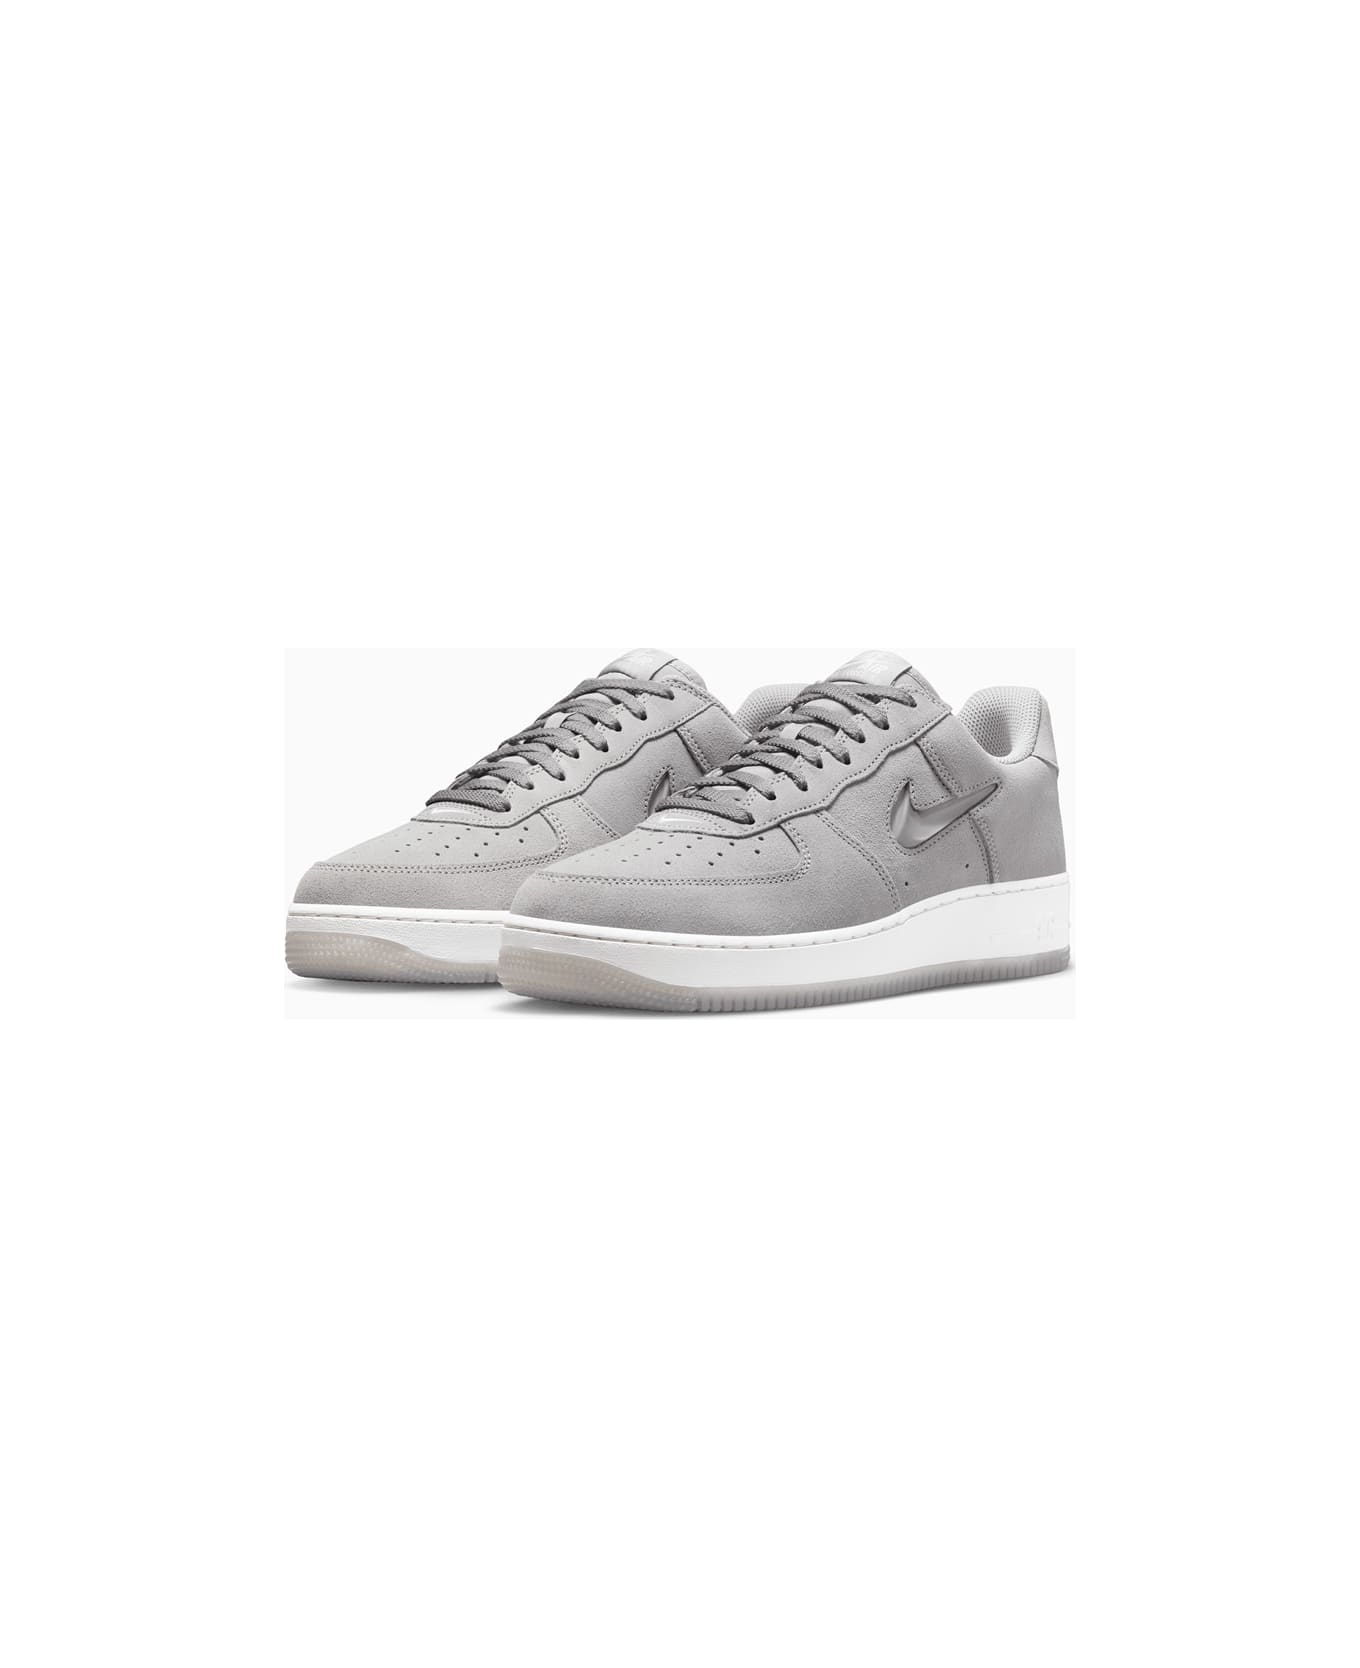 Nike Air Force 1 Low Retro Sneakers Dv0785-003 - Grey